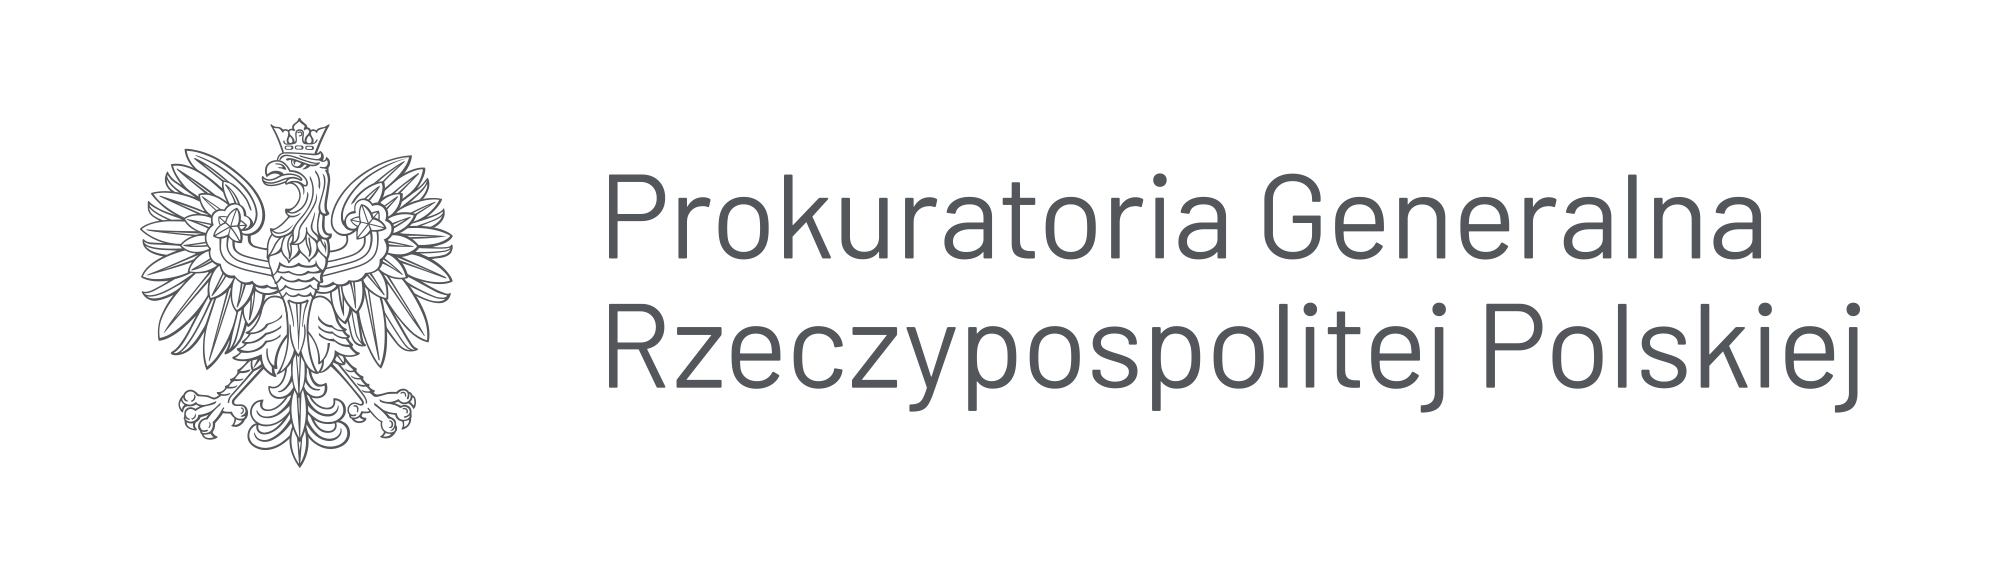 Logo Prokuratorii Generalnej Rzeczypospolitej Polskiej